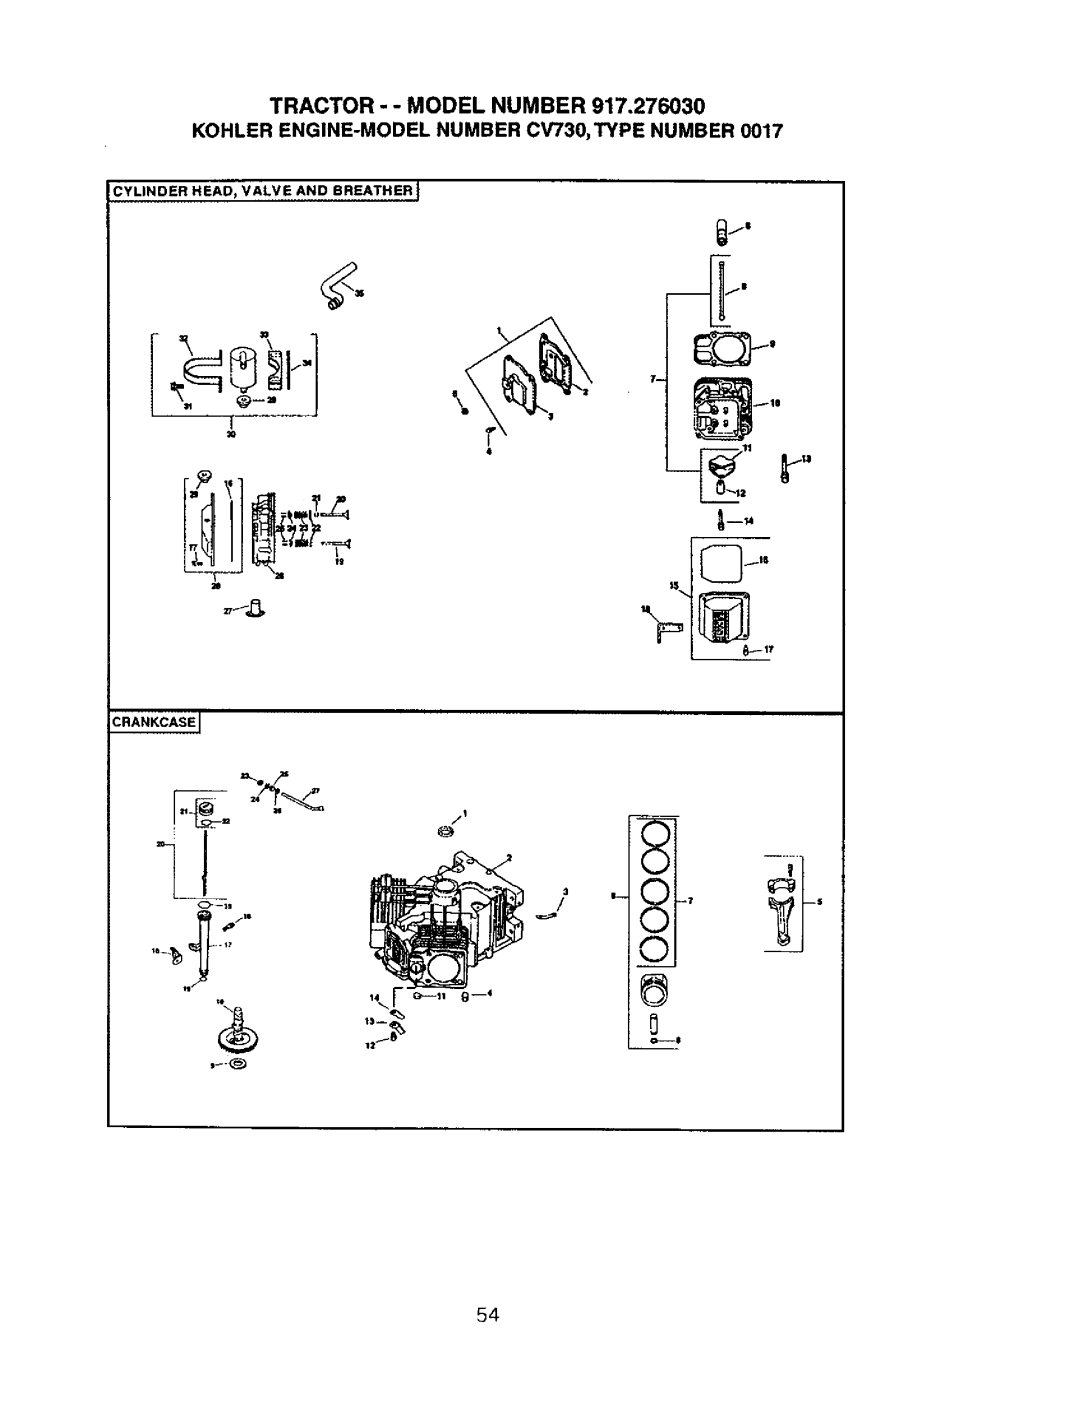 Craftsman 917.27603 manual TRACTOR - - MODEL NUMBER 917,276030, KOHLER ENGINE-MODELNUMBER CV730,TYPE NUMBER 